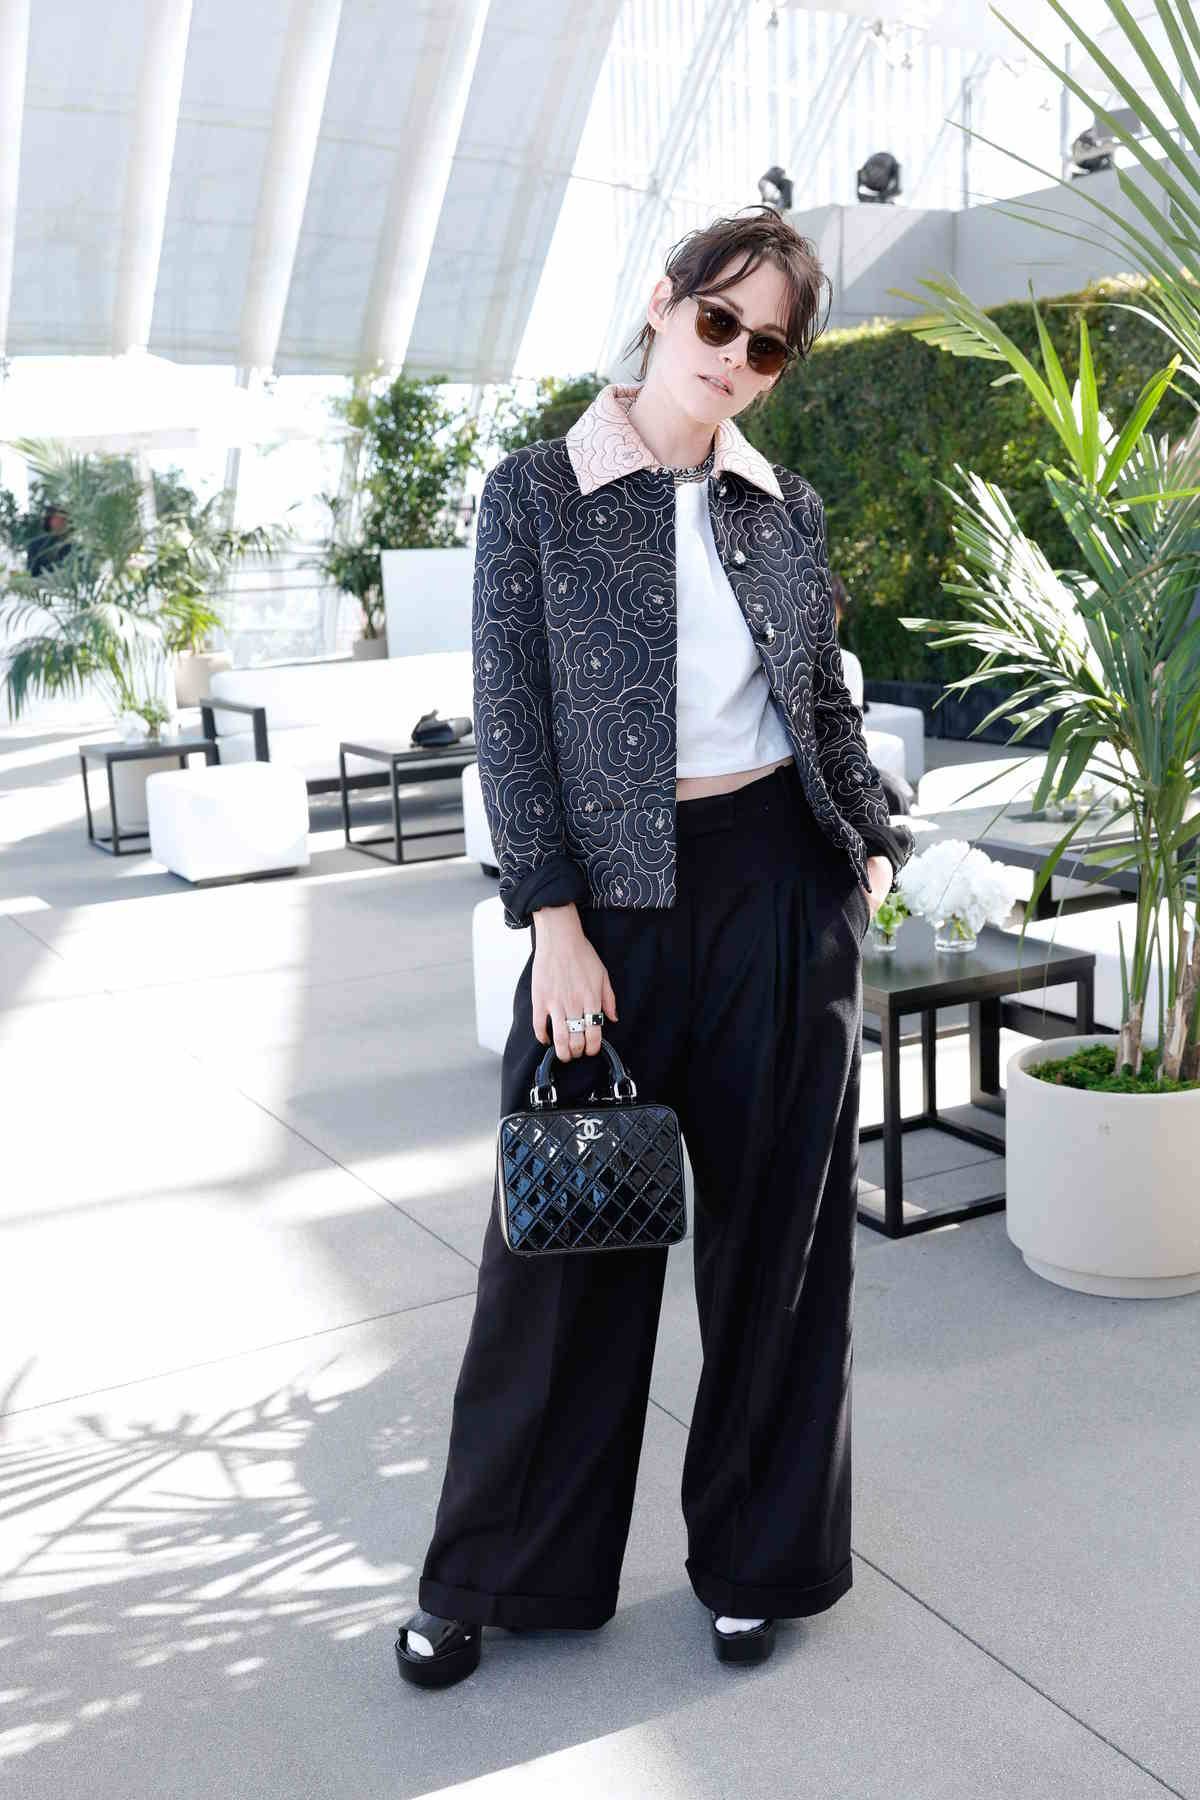 Kristen Stewart na przyjęcie Chanel w Los Angeles przyszła z partnerką Dylan Meyer. Wybrąły na tę okazję dopasowane stylizacje.